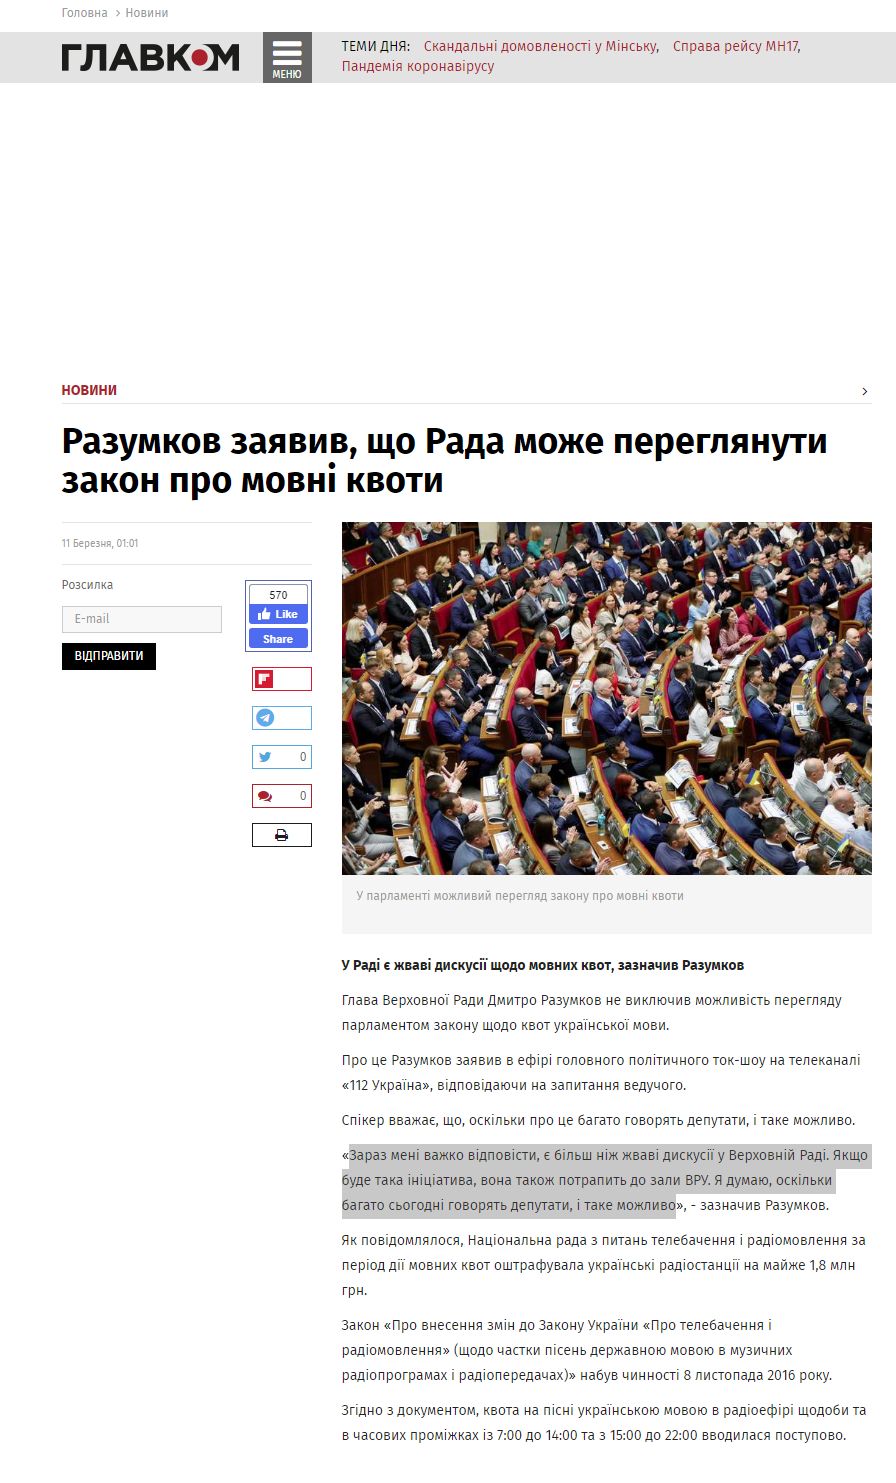 https://glavcom.ua/news/razumkov-zayaviv-shcho-rada-mozhe-pereglyanuti-zakon-pro-movni-kvoti-664820.html